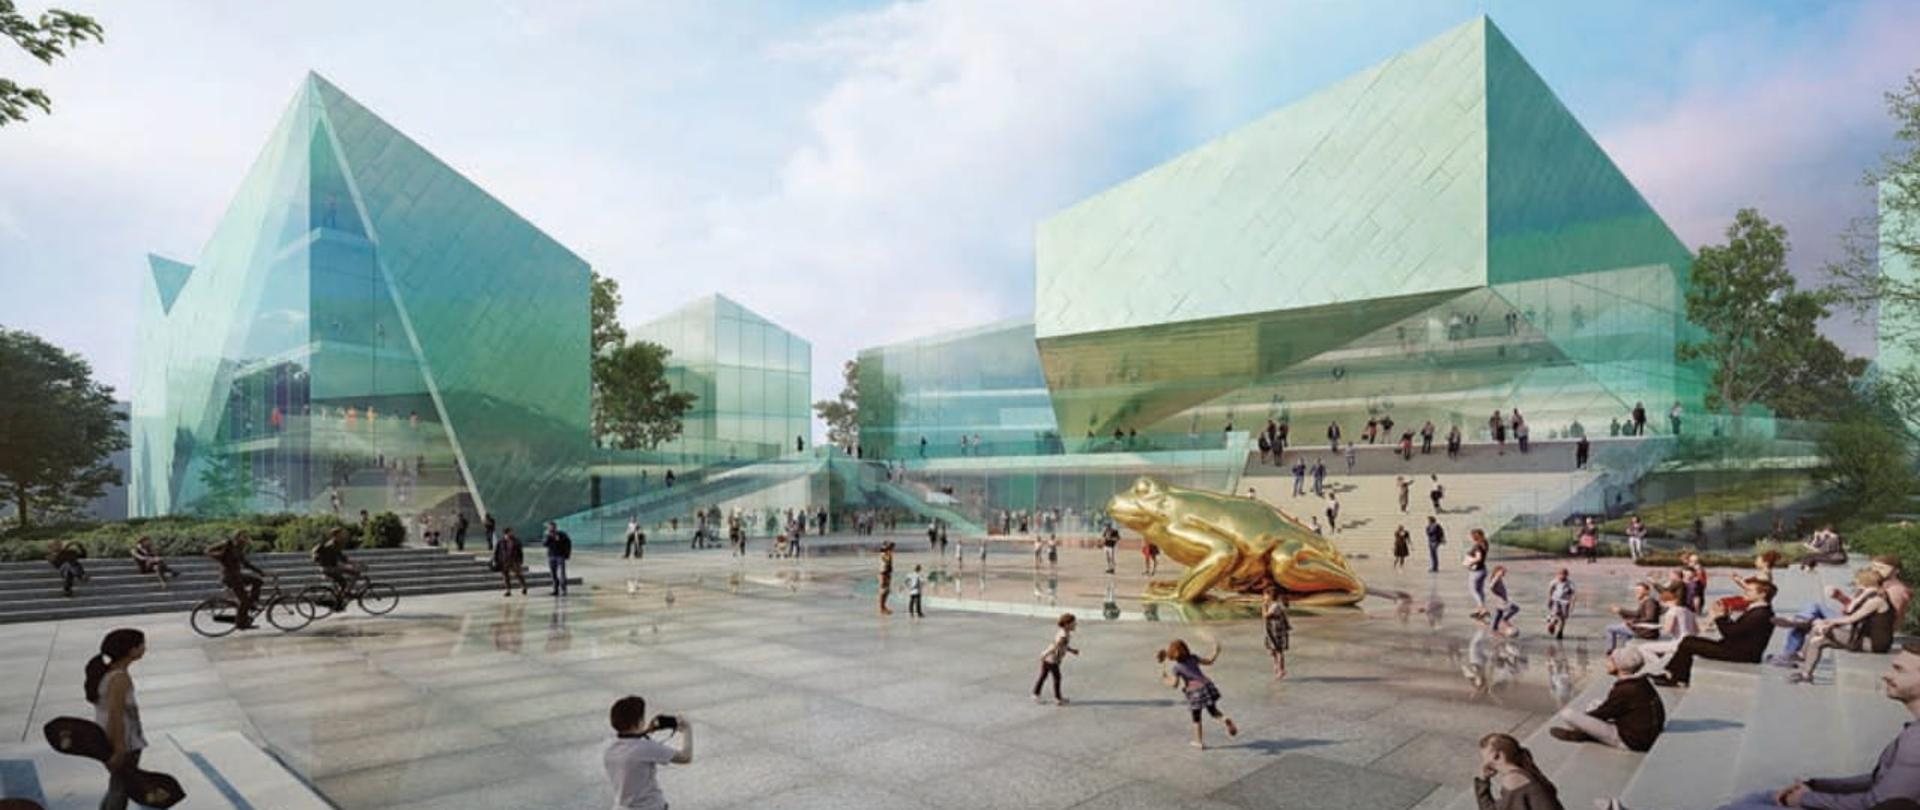 Konkurs na koncepcję architektoniczną Europejskiego Centrum Filmowego CAMERIMAGE w Toruniu rozstrzygnięty